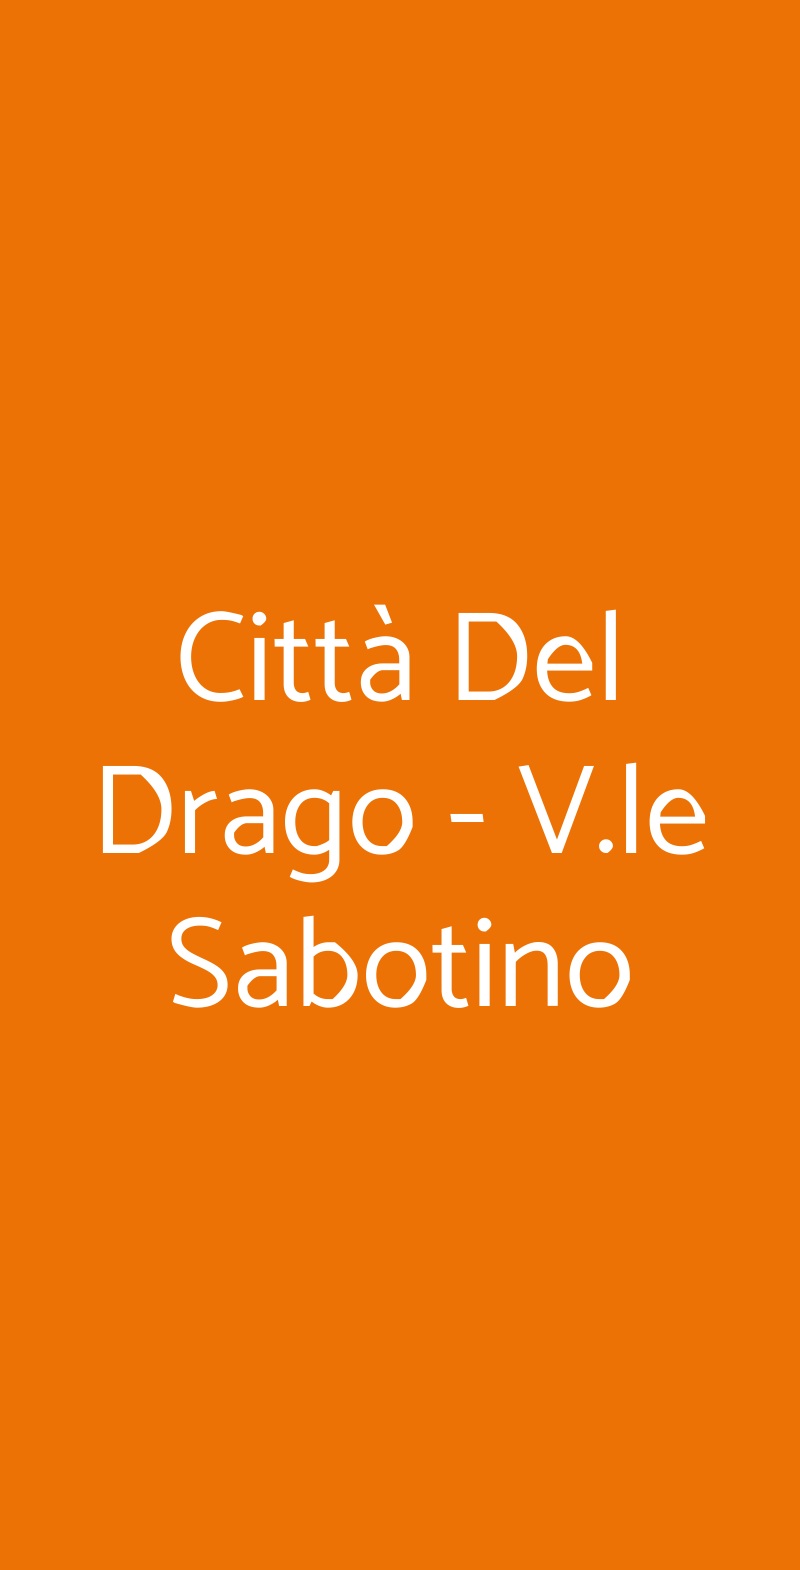 Città Del Drago - V.le Sabotino Milano menù 1 pagina